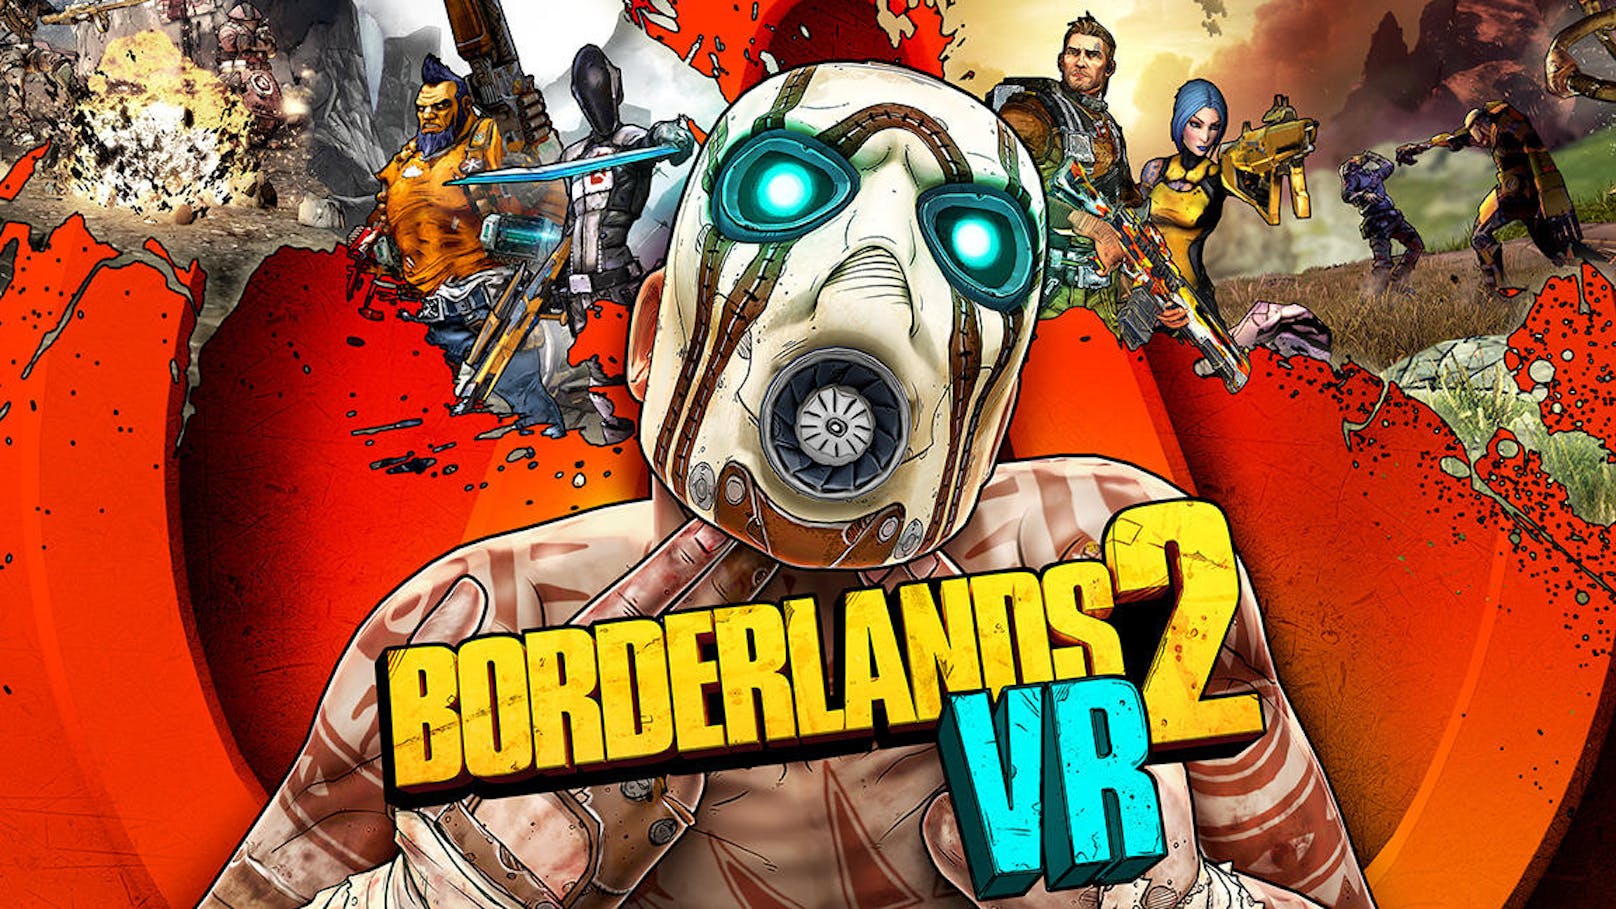 Es ist eine Streitfrage: Hätte Borderlands 2 VR besser funktioniert, wenn man den Titel von Grund auf neu für VR entwickelt hätte?